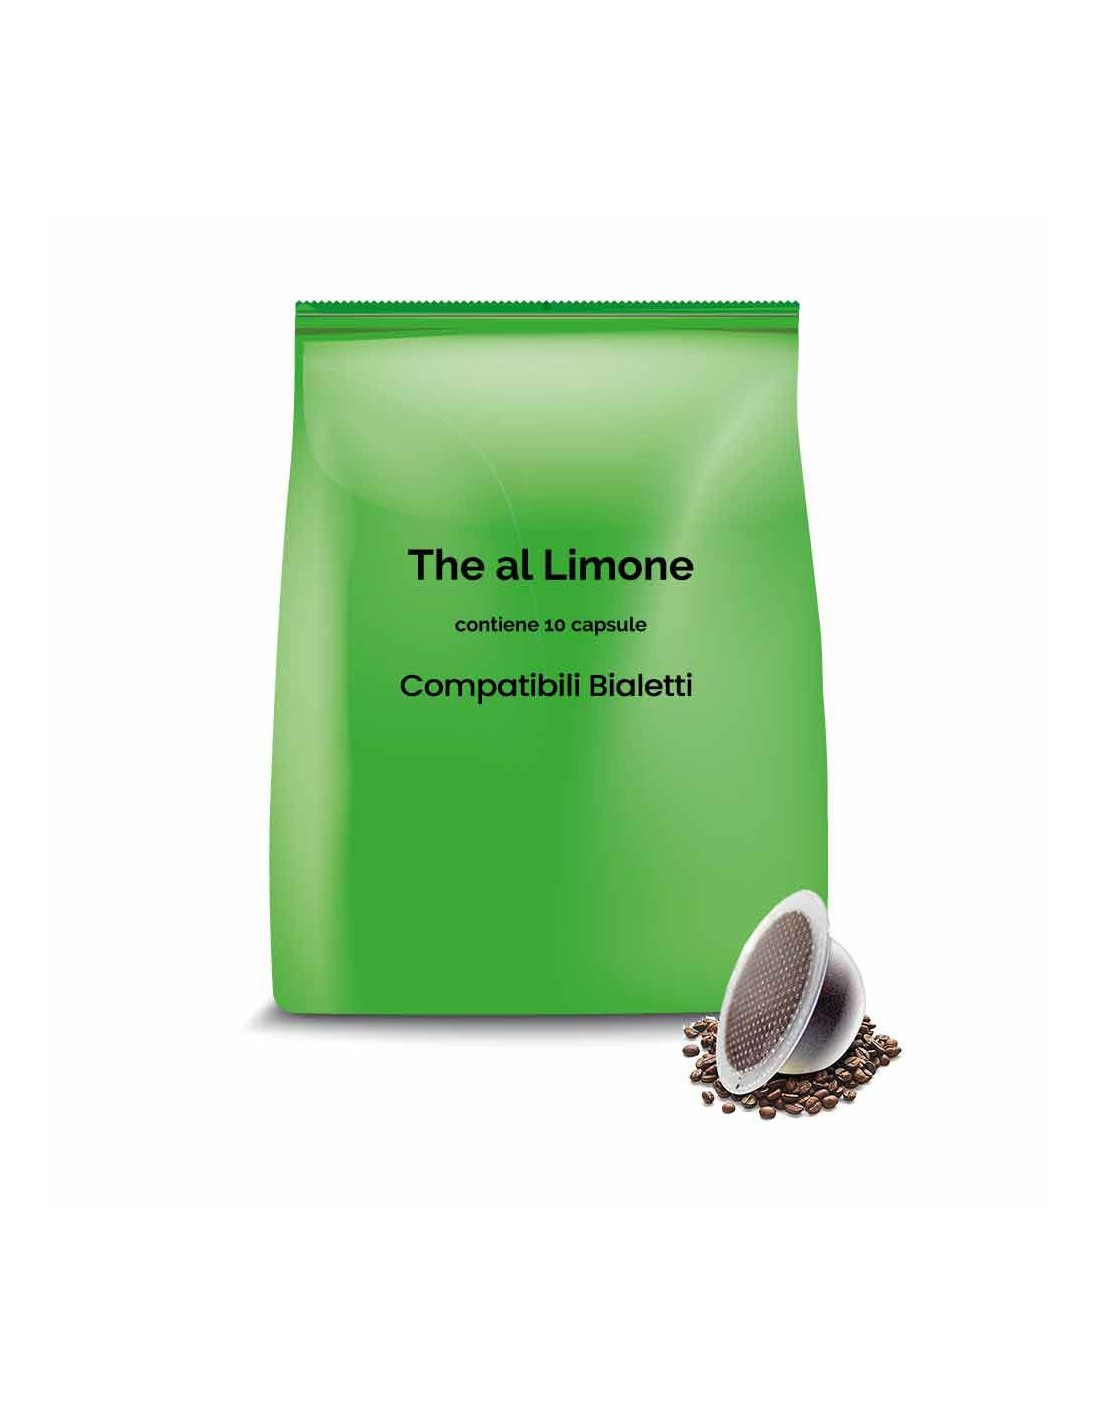 Capsule compatibli bialetti the al limone